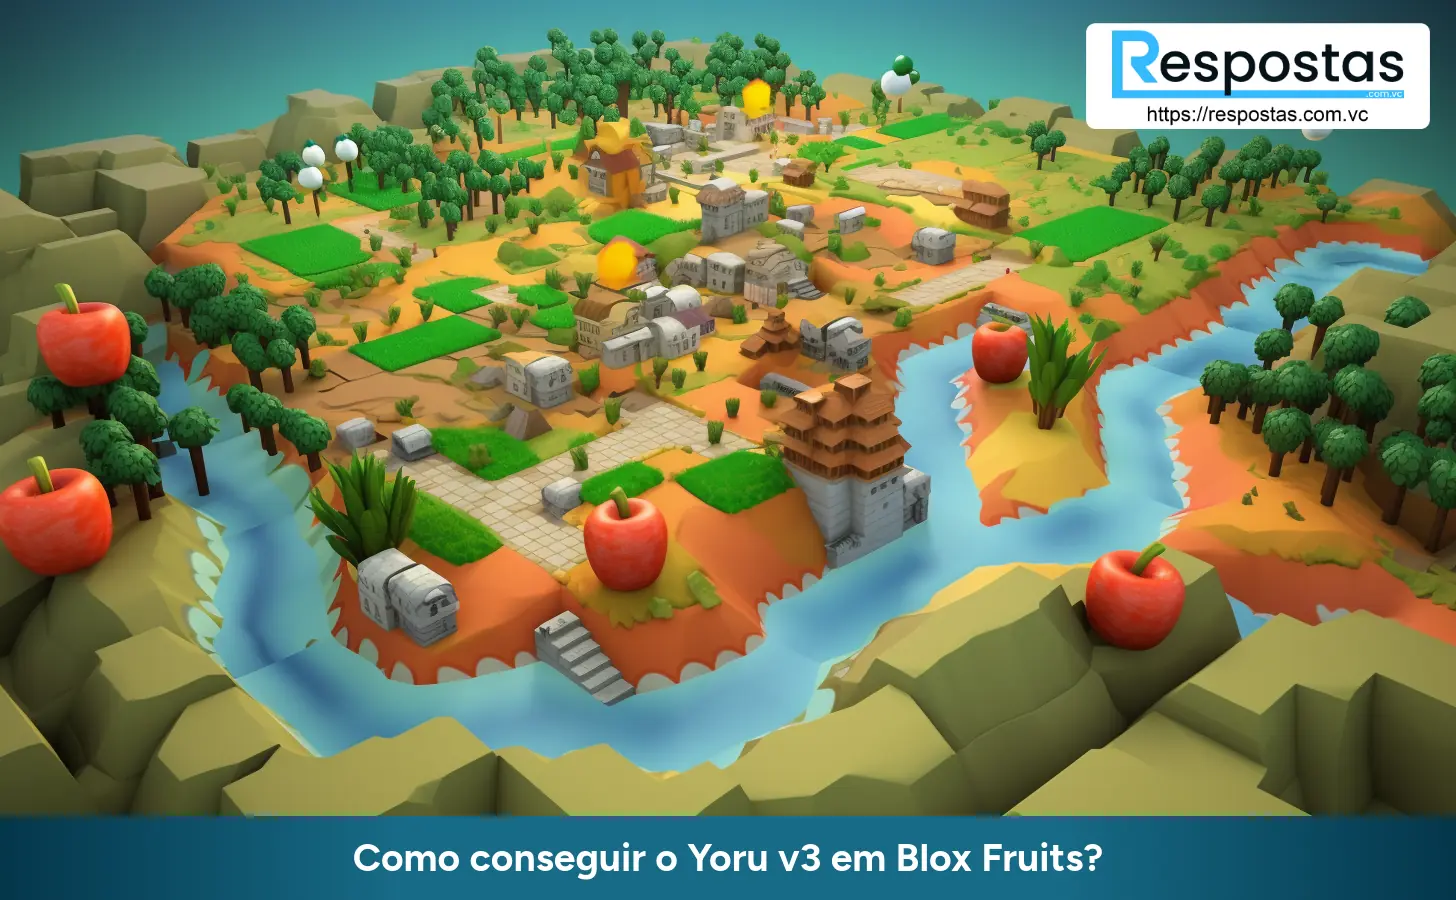 Como conseguir o Yoru v3 em Blox Fruits?